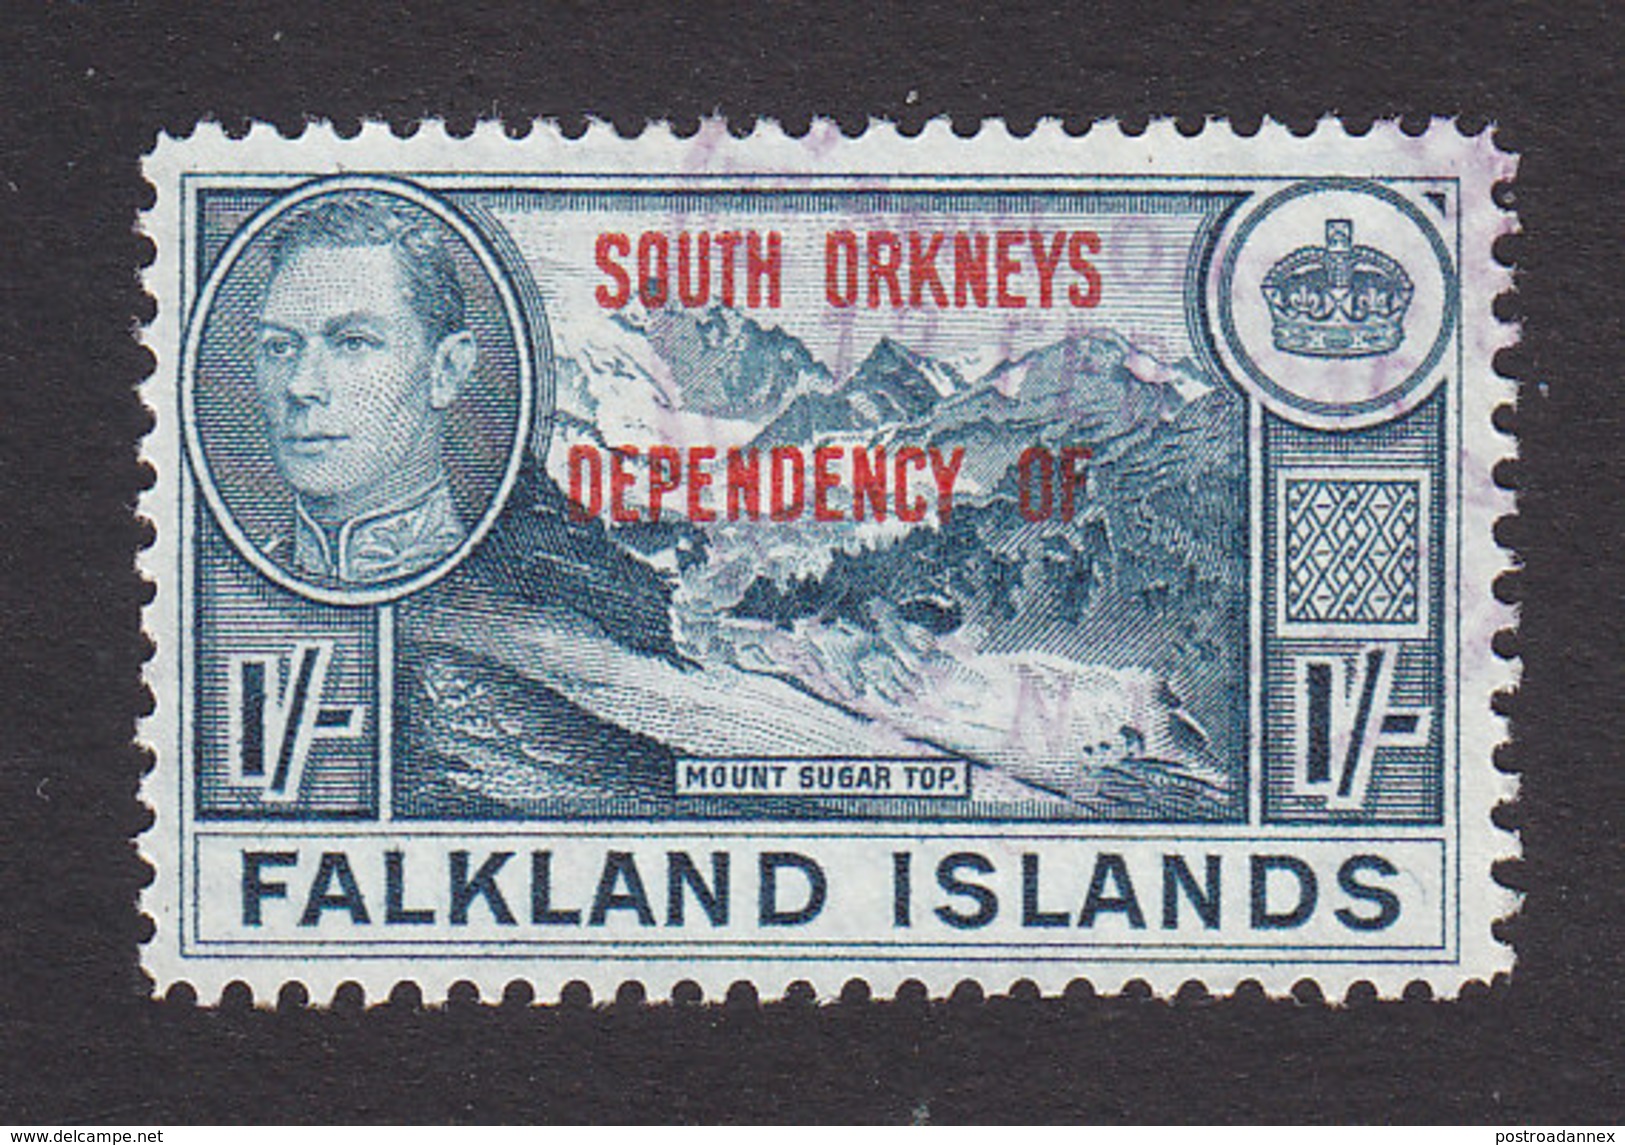 Falkland Islands, South Orkneys, Scott #4L8, Used, Ship Overprinted, Issued 1944 - Falkland Islands